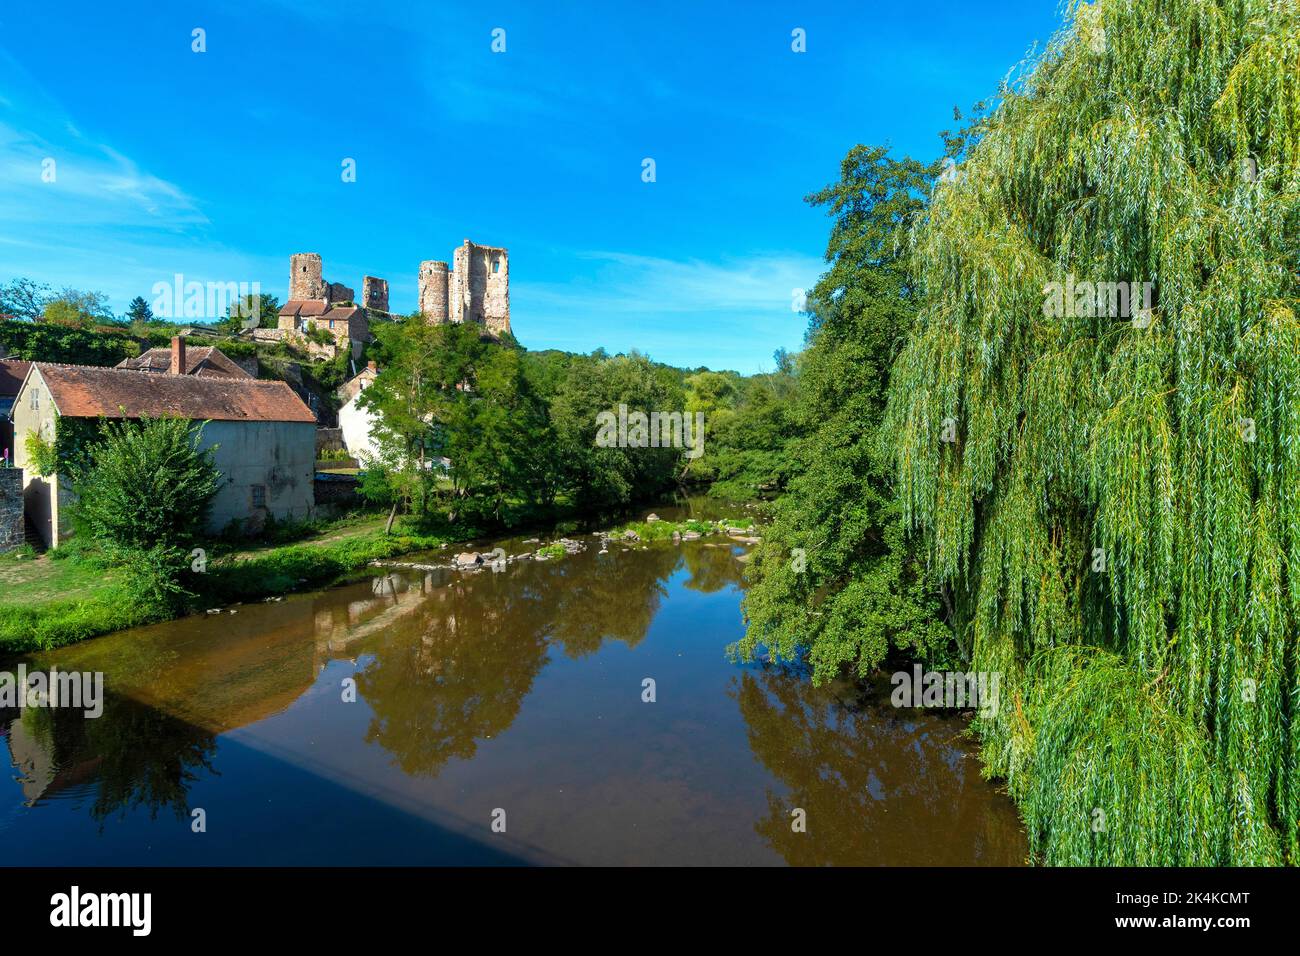 Herisson bezeichnete sie als „Petite Cité de Caractère“. Blick auf das castel de Ducs de Bourbon und den Fluss Aumance. Allier. Auvergne Rhone Alpes. Frankreich Stockfoto